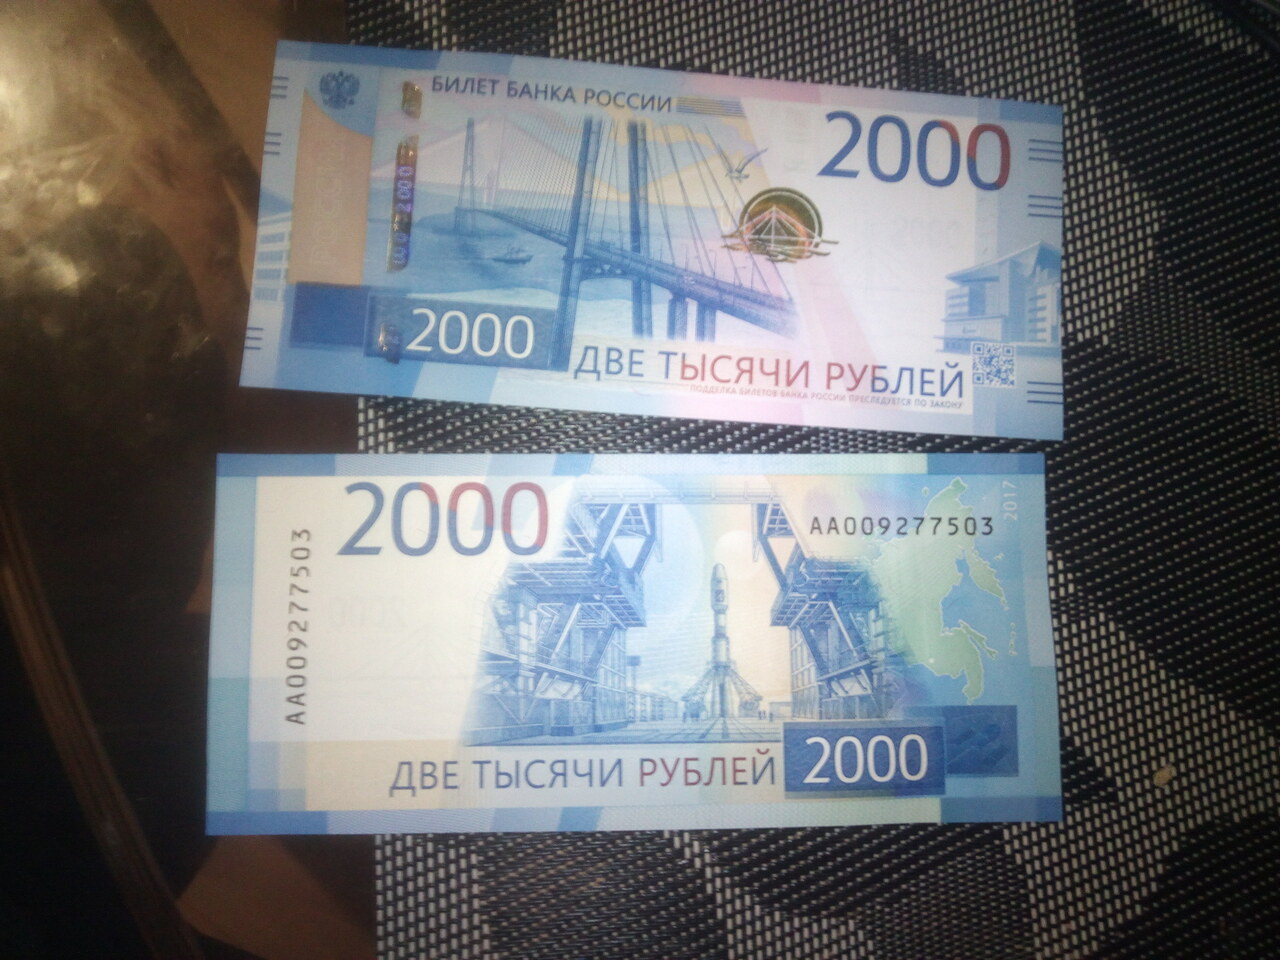 3000 рублей на счет. Купюра 2000 рублей. 1000 И 2000 рублей. Две тысячи рублей купюра. Банкнота 2000 руб.